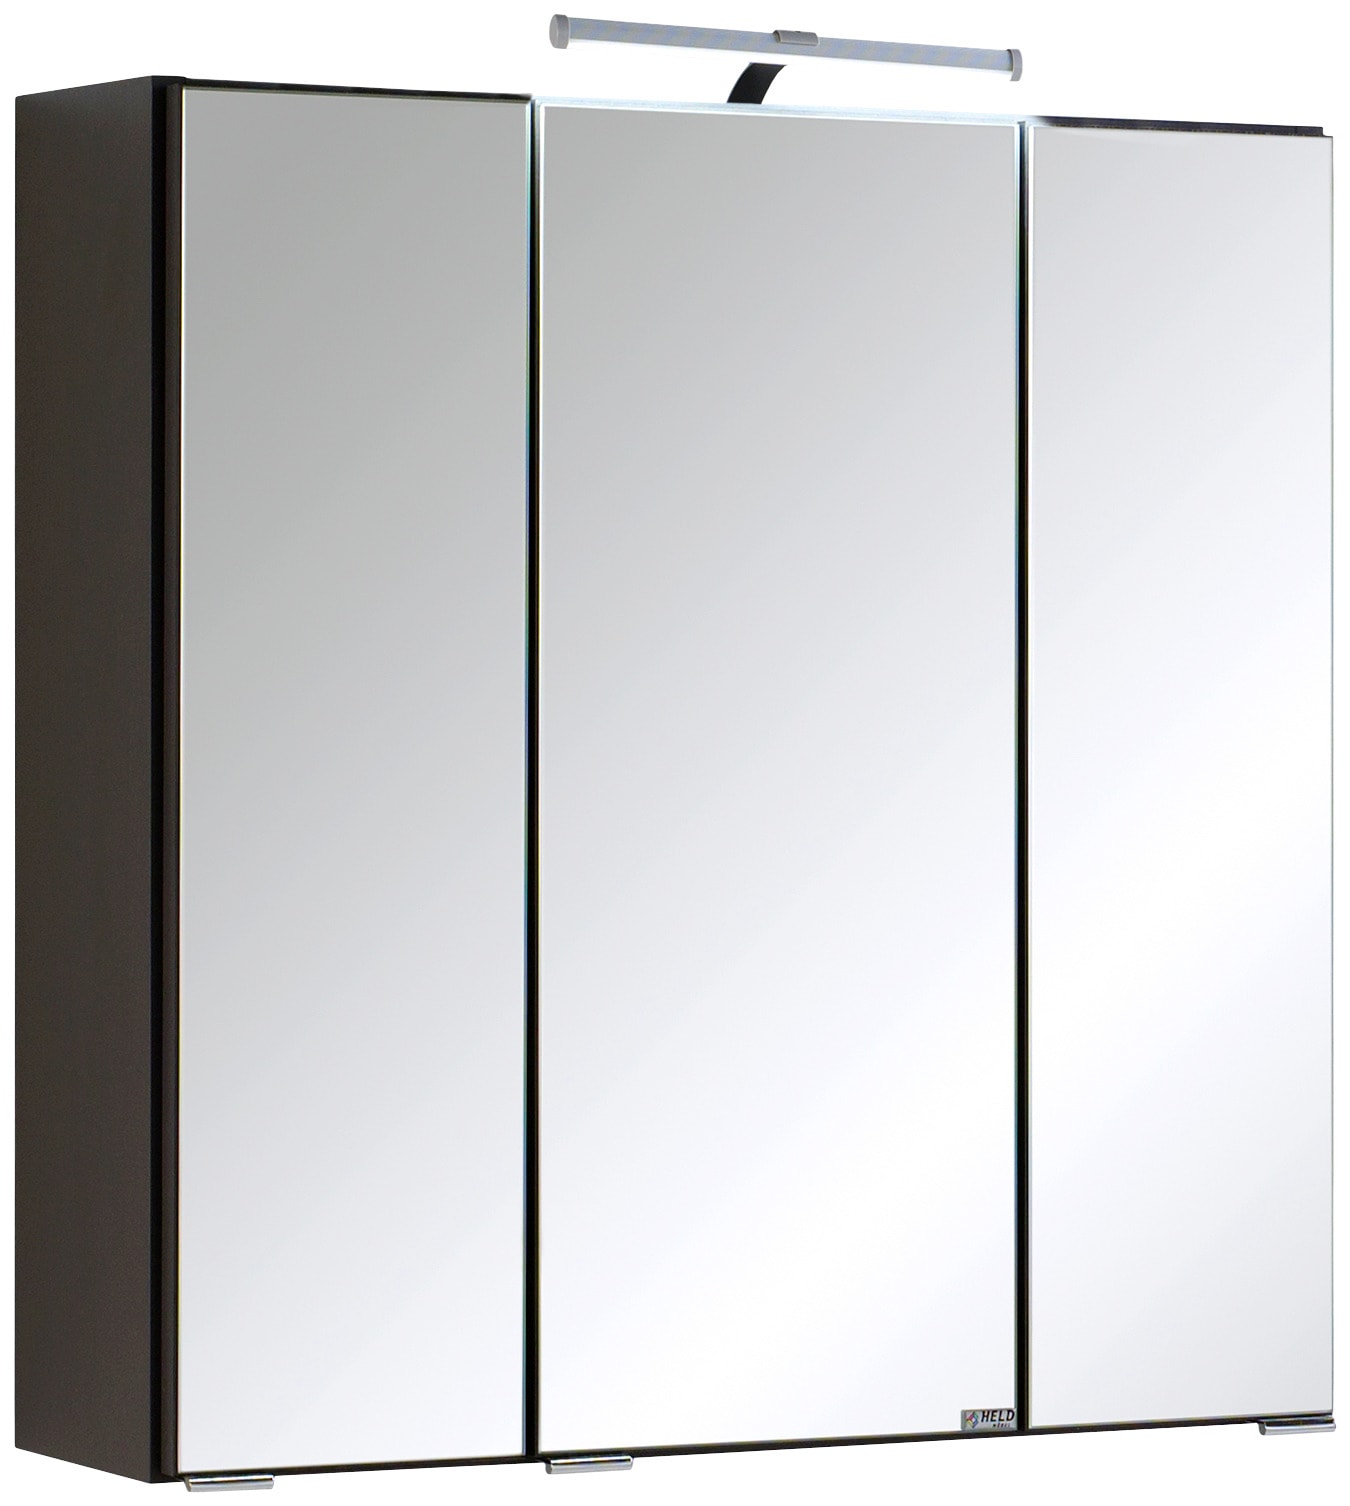 HELD MÖBEL Spiegelschrank »Texas Spiegel Badmöbel Badschrank Badspiegel Bestseller«, mit 3 Türen, Breite 60cm, wahlweise mit LED, Badezimmerspiegelschrank